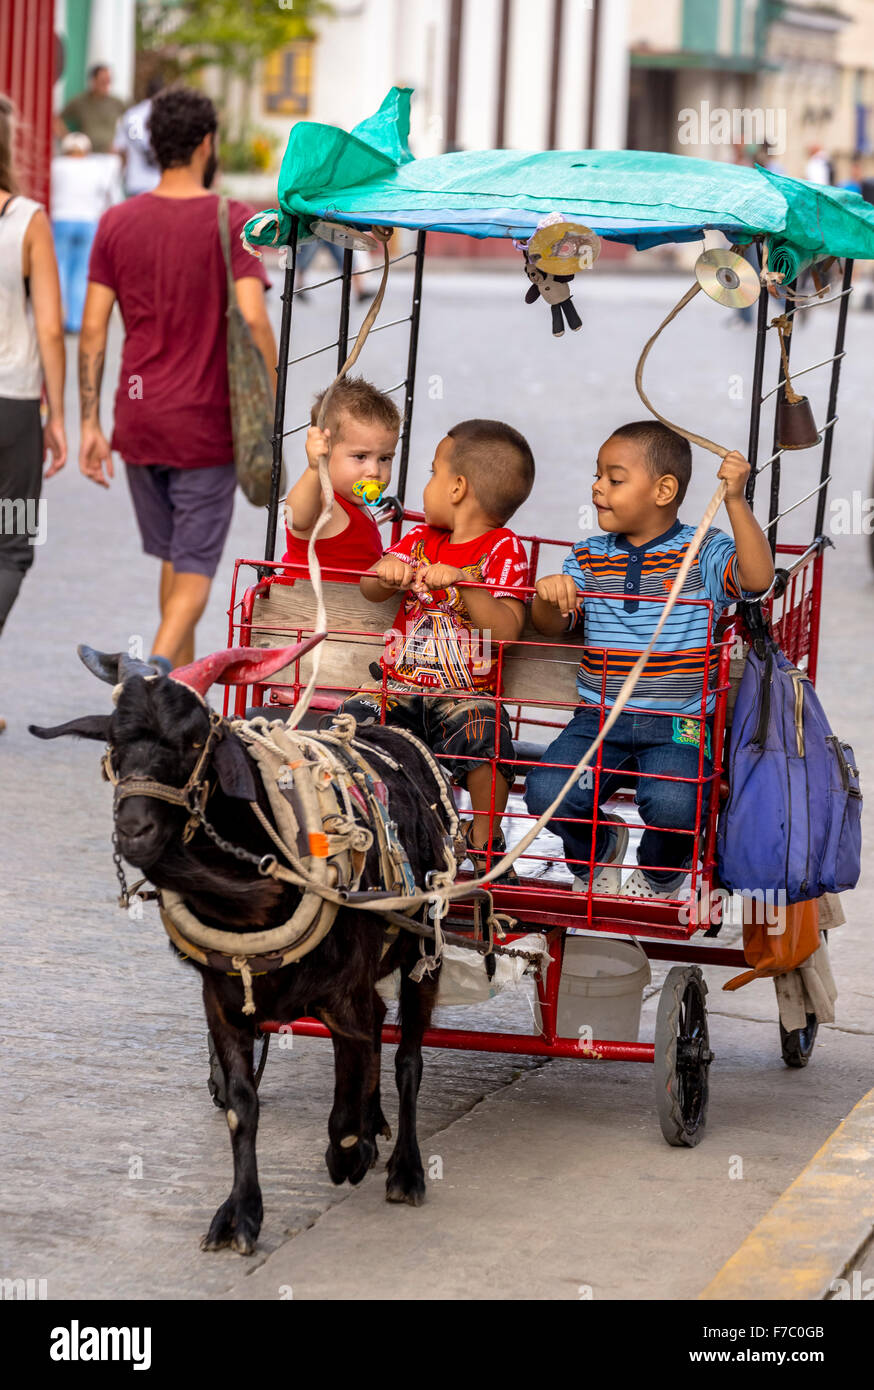 Plaisir des enfants, tirée par un chariot de chevreaux, à la vie dans la rue dans le centre de Santa Clara à Parque de Santa Clara, Santa Clara Banque D'Images